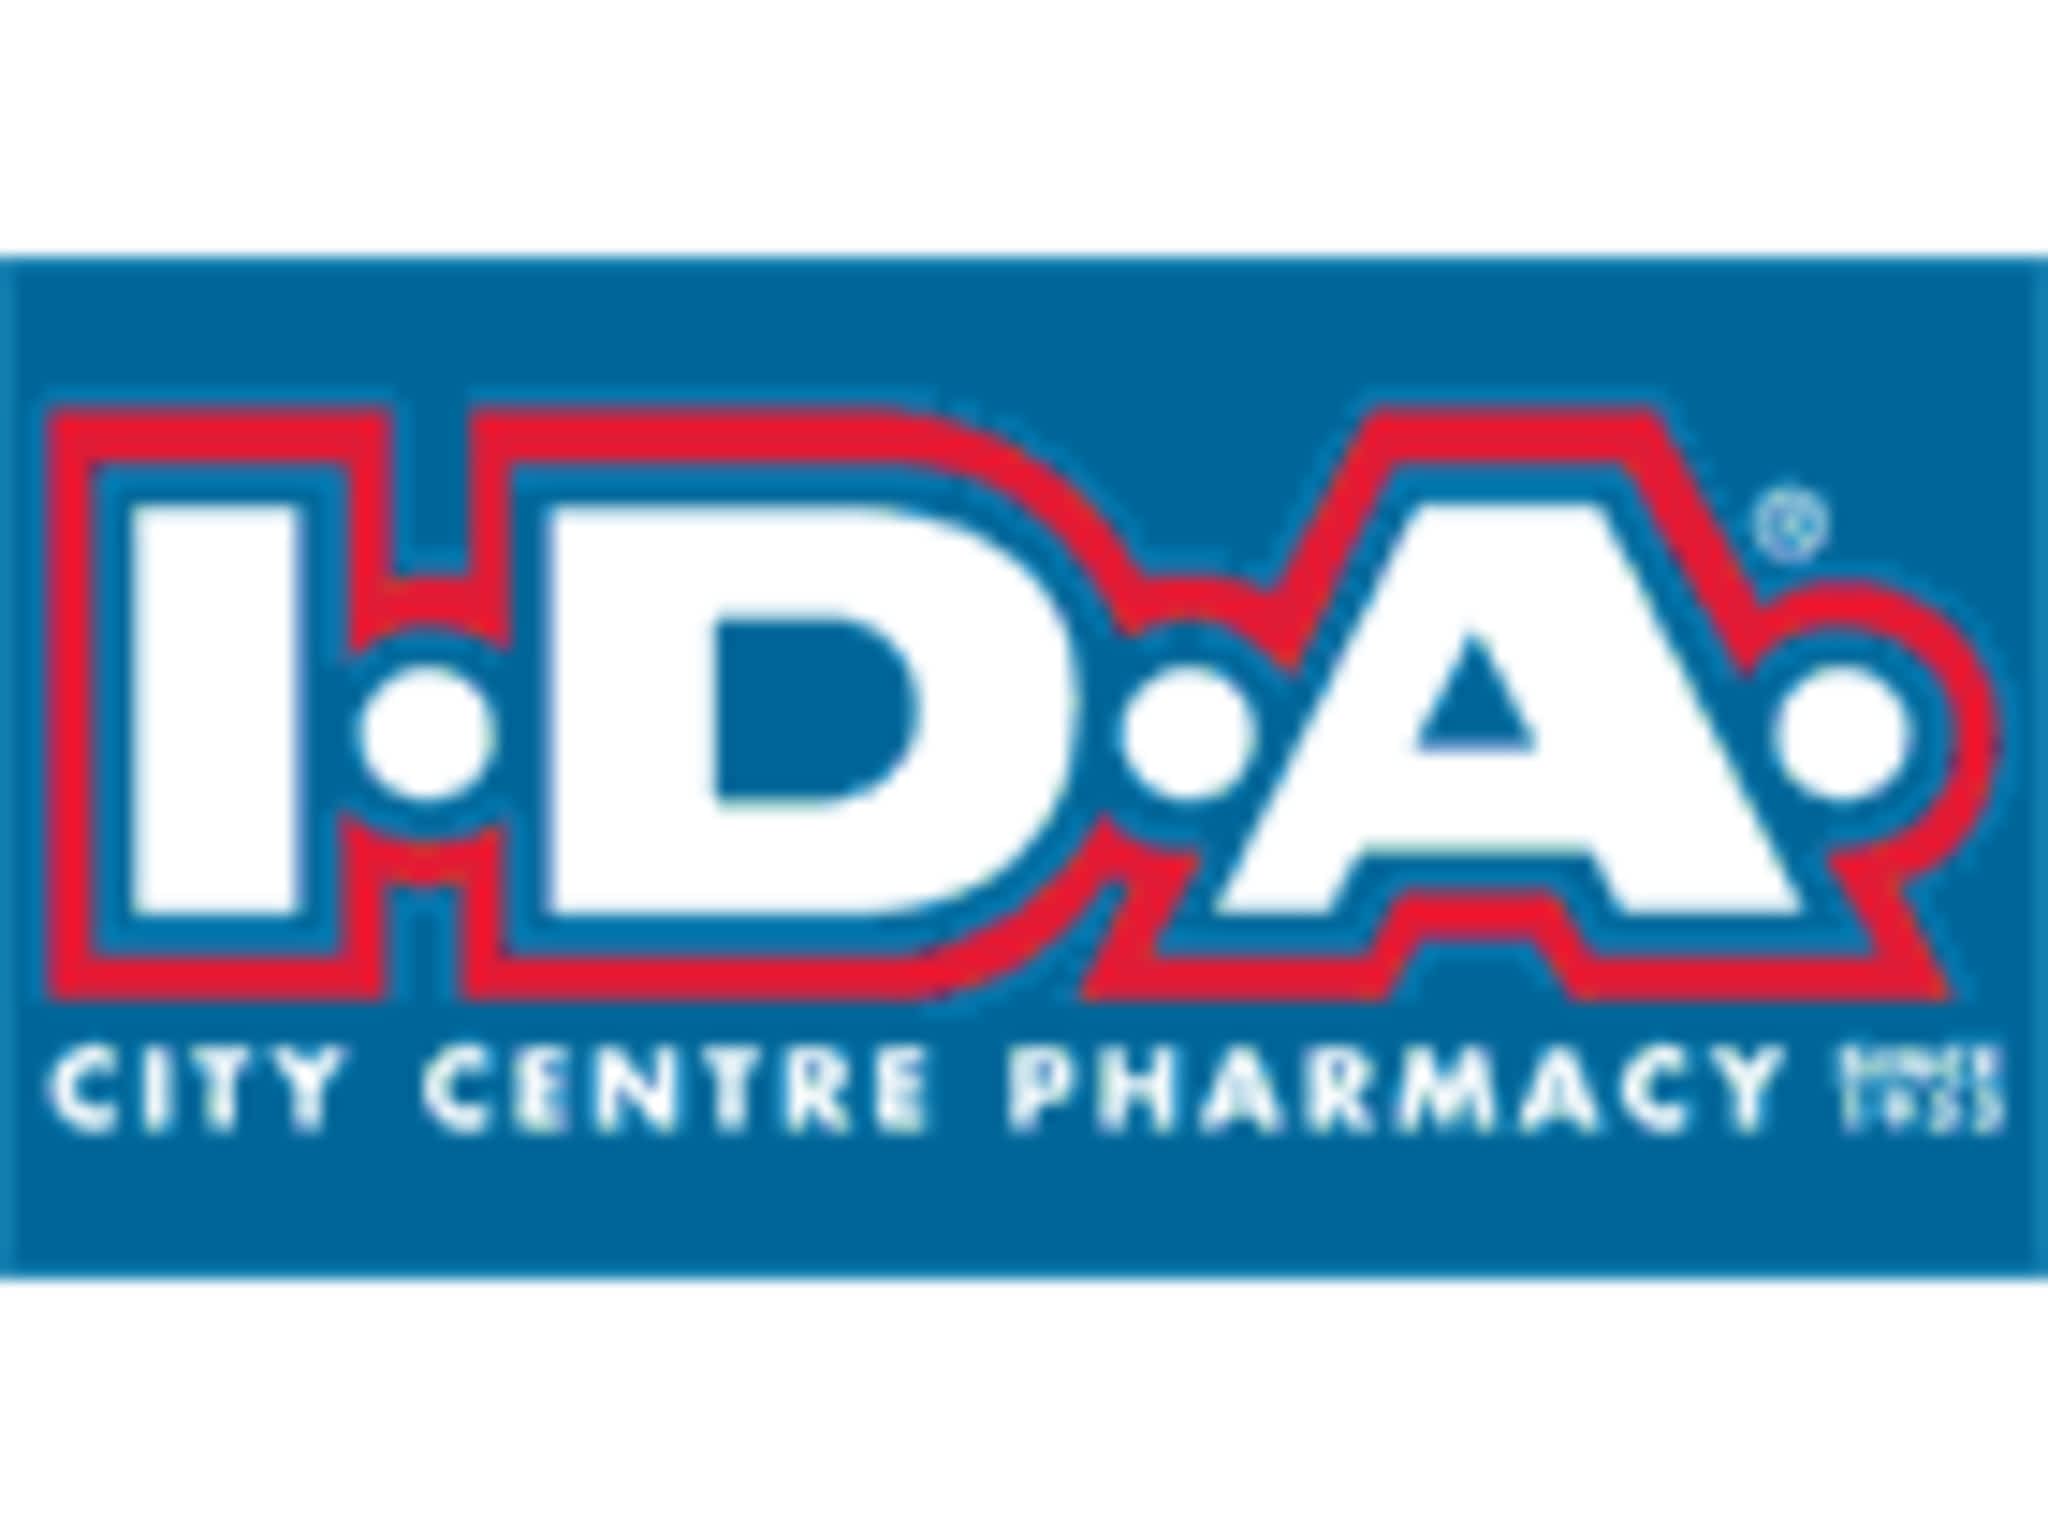 photo City Centre IDA Pharmacy